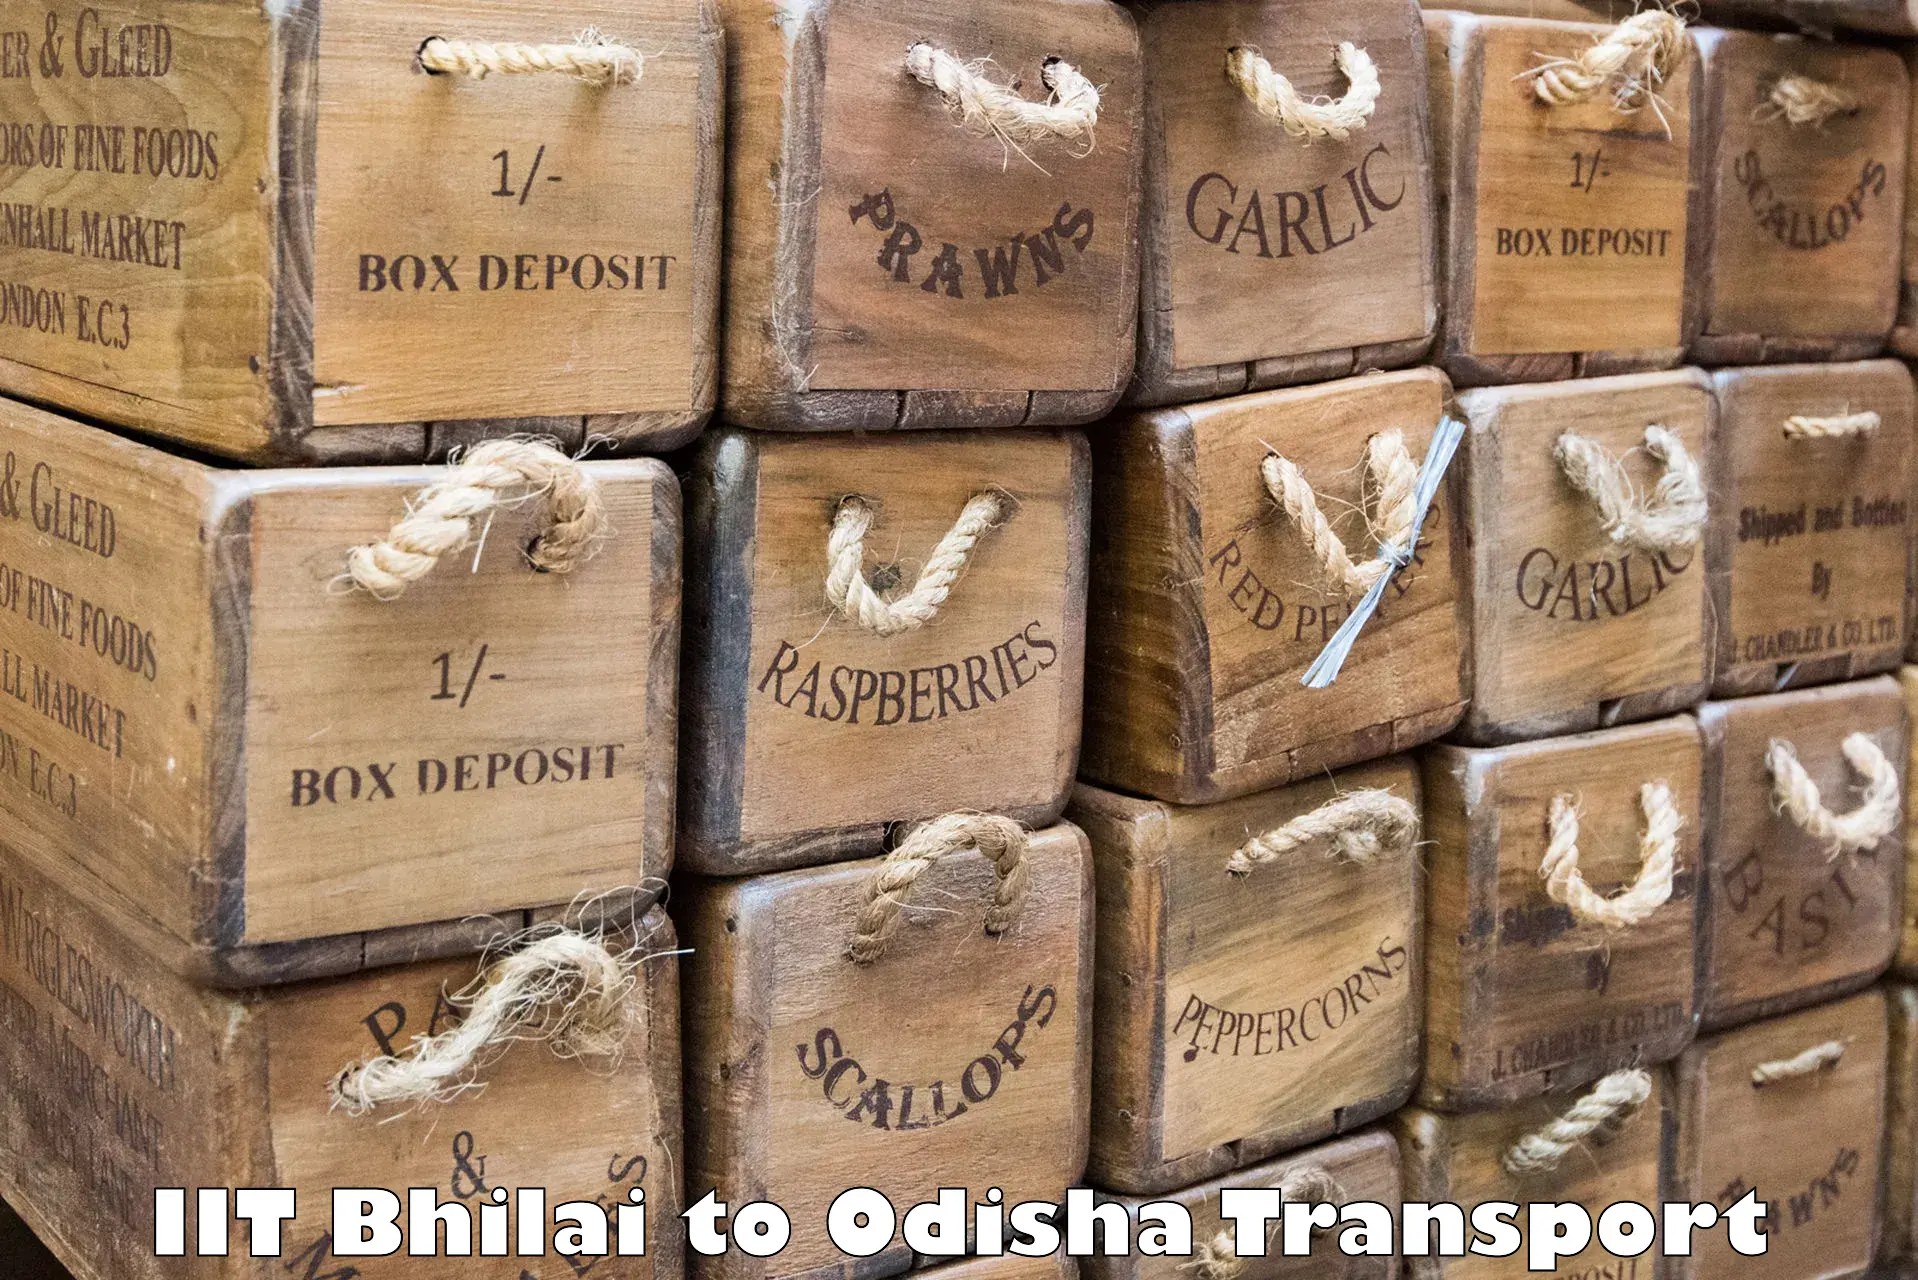 Transport services IIT Bhilai to Baleswar